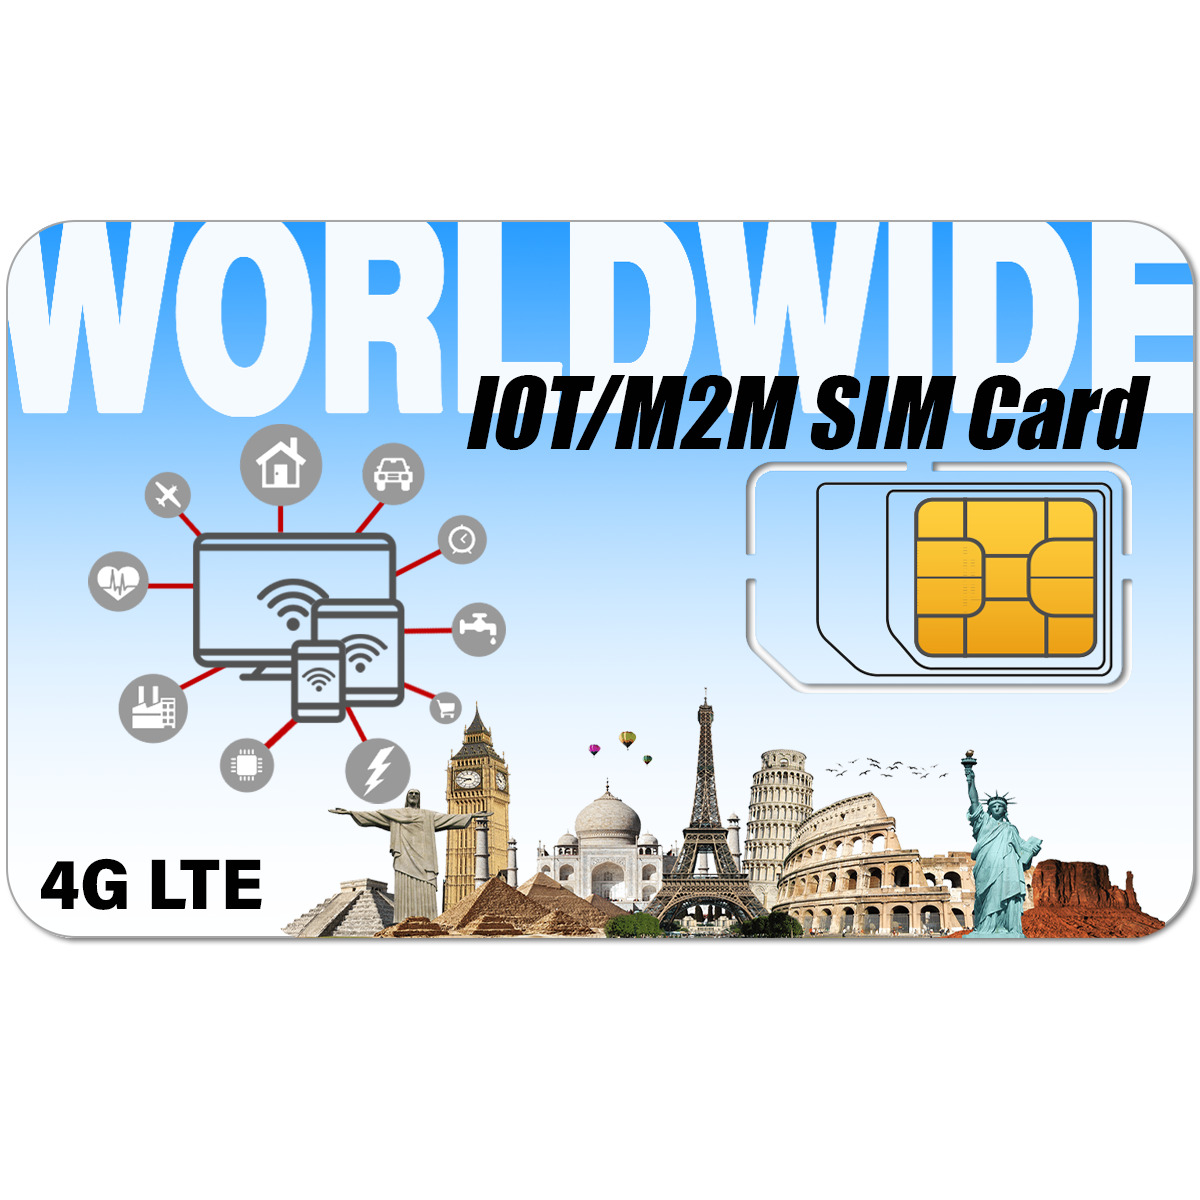 SpeedTalk IoT Data Internet SIM Card M2M -12 Months Service 64kbps 4G Devices 